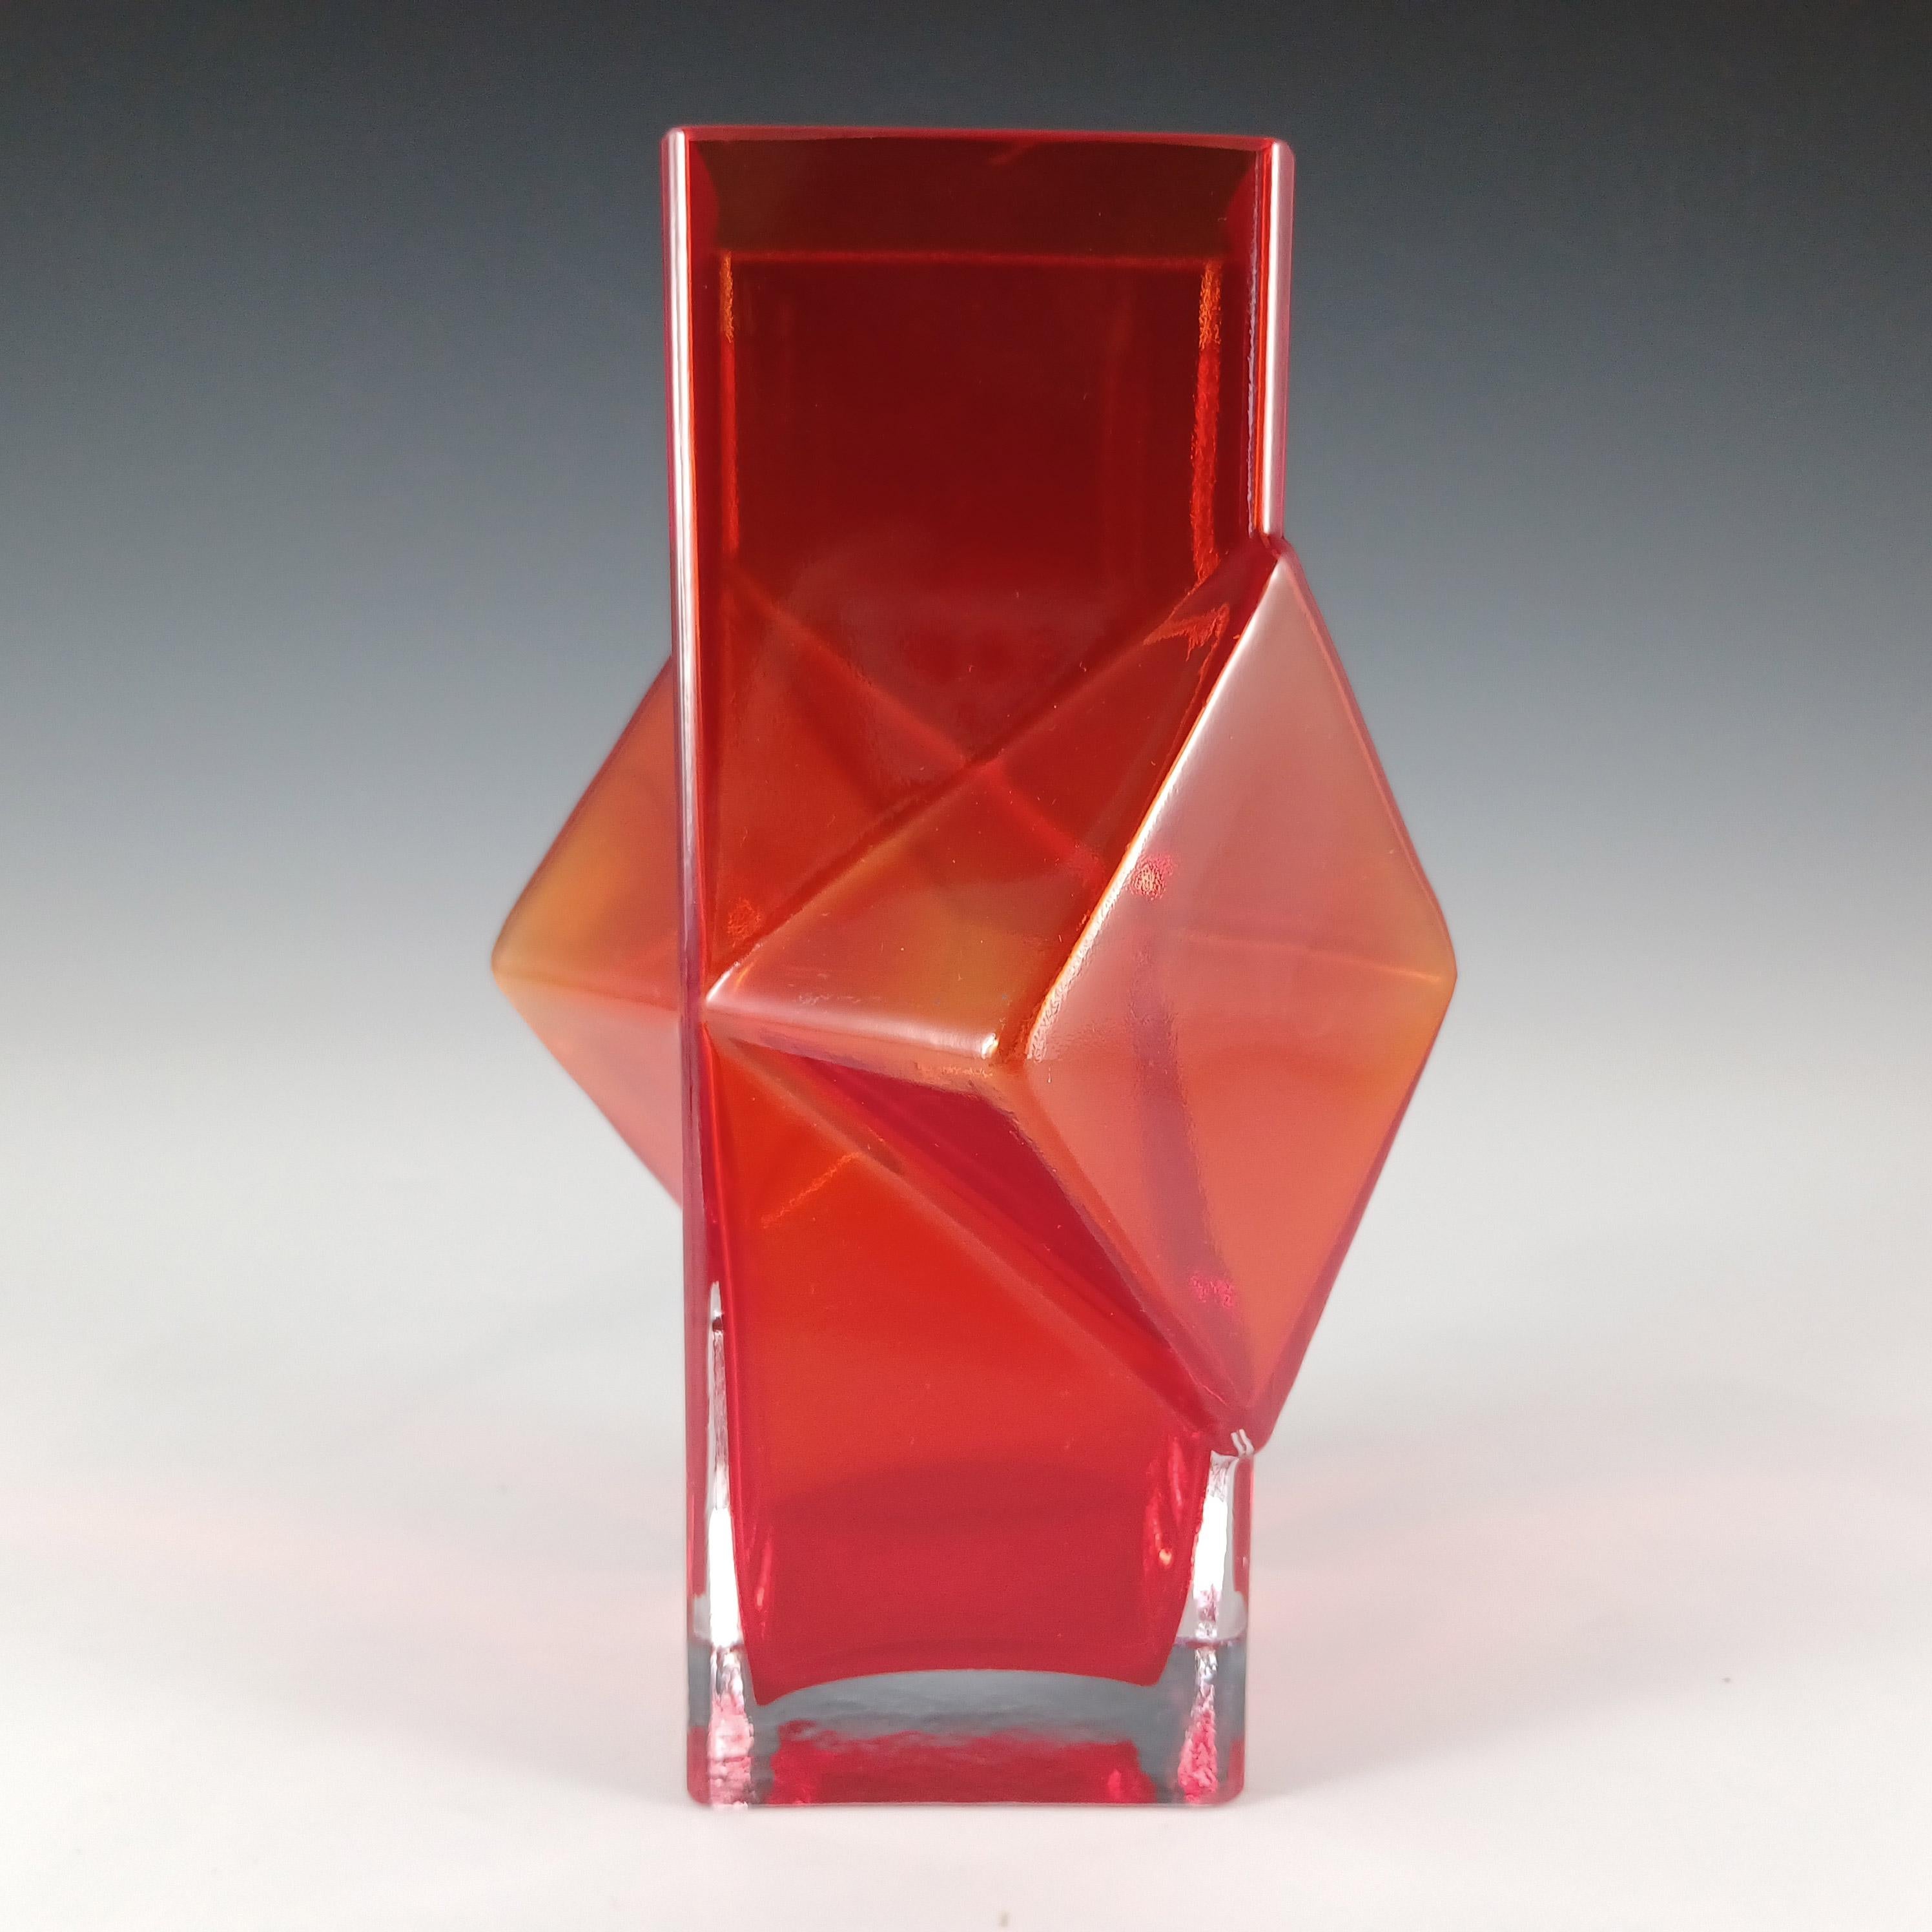 A stunning Scandinavian red cased glass 